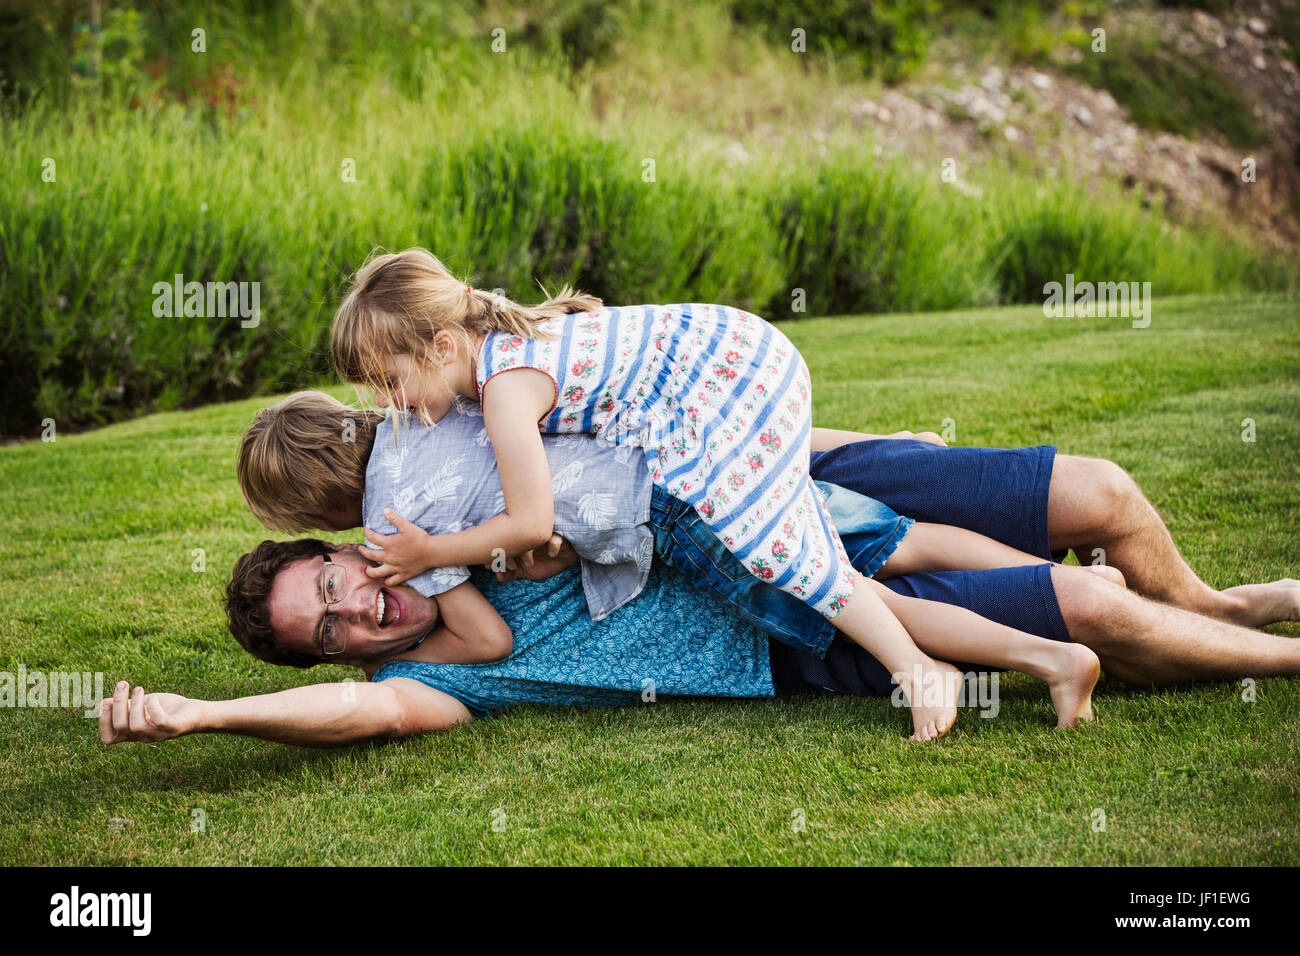 Ein Mann liegt auf dem Rasen mit seinen beiden Kindern liegen oben auf ihm spielen. Stockfoto